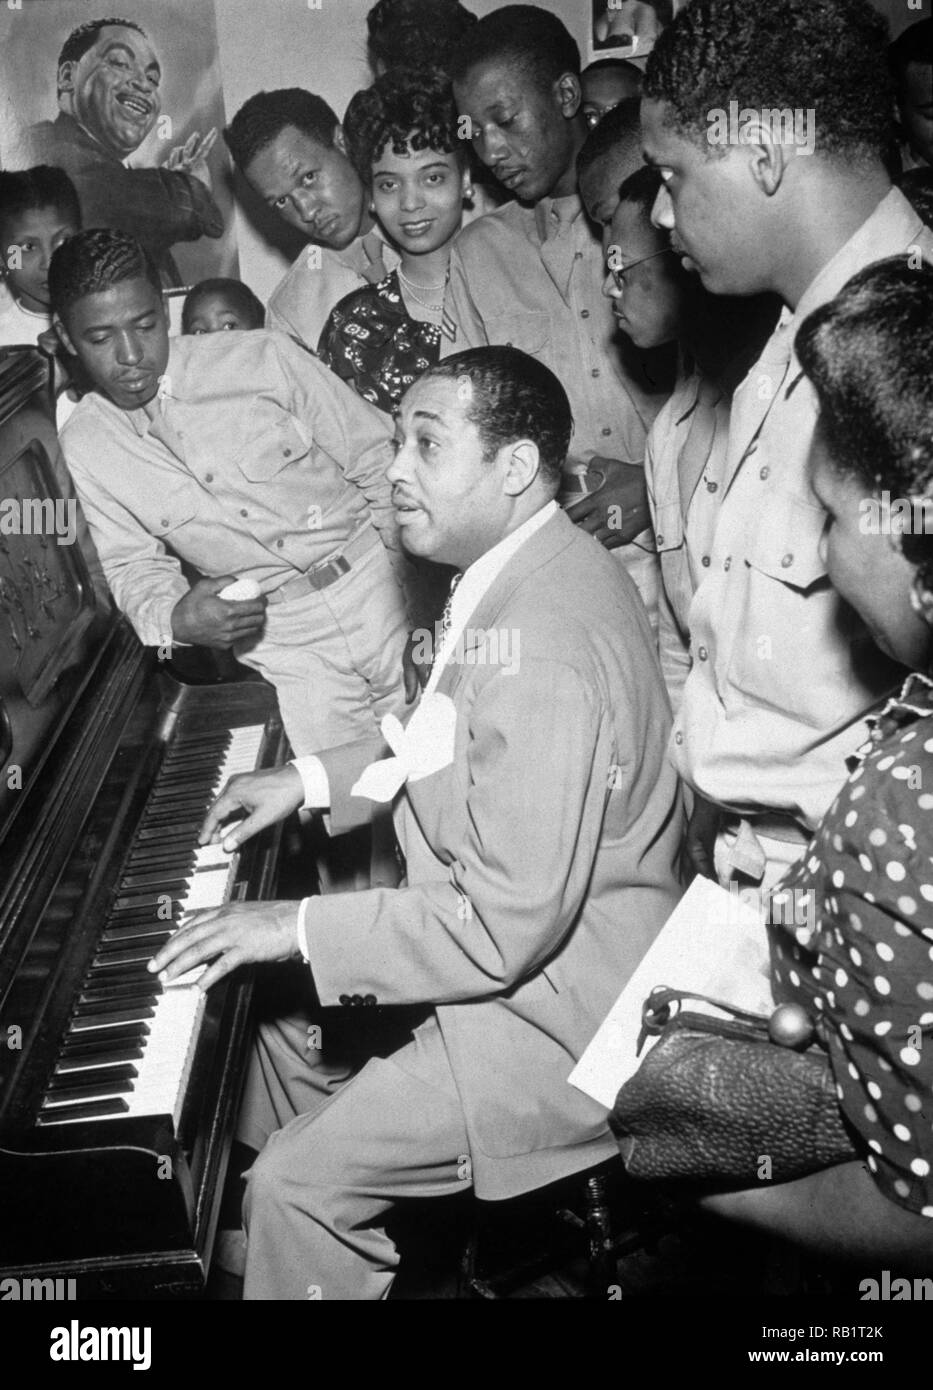 Le musicien de jazz américain Duke Ellington joue du piano pour un groupe d'hommes et femmes, Hartford, Connecticut, 1942. Chanteuse de jazz Joya Sherrill, qui a chanté avec Ellington thorughout la plupart des années 1940, se dresse au centre arrière (elle porte une perle neckace). Une affiche de Ellington est sur le mur. Banque D'Images